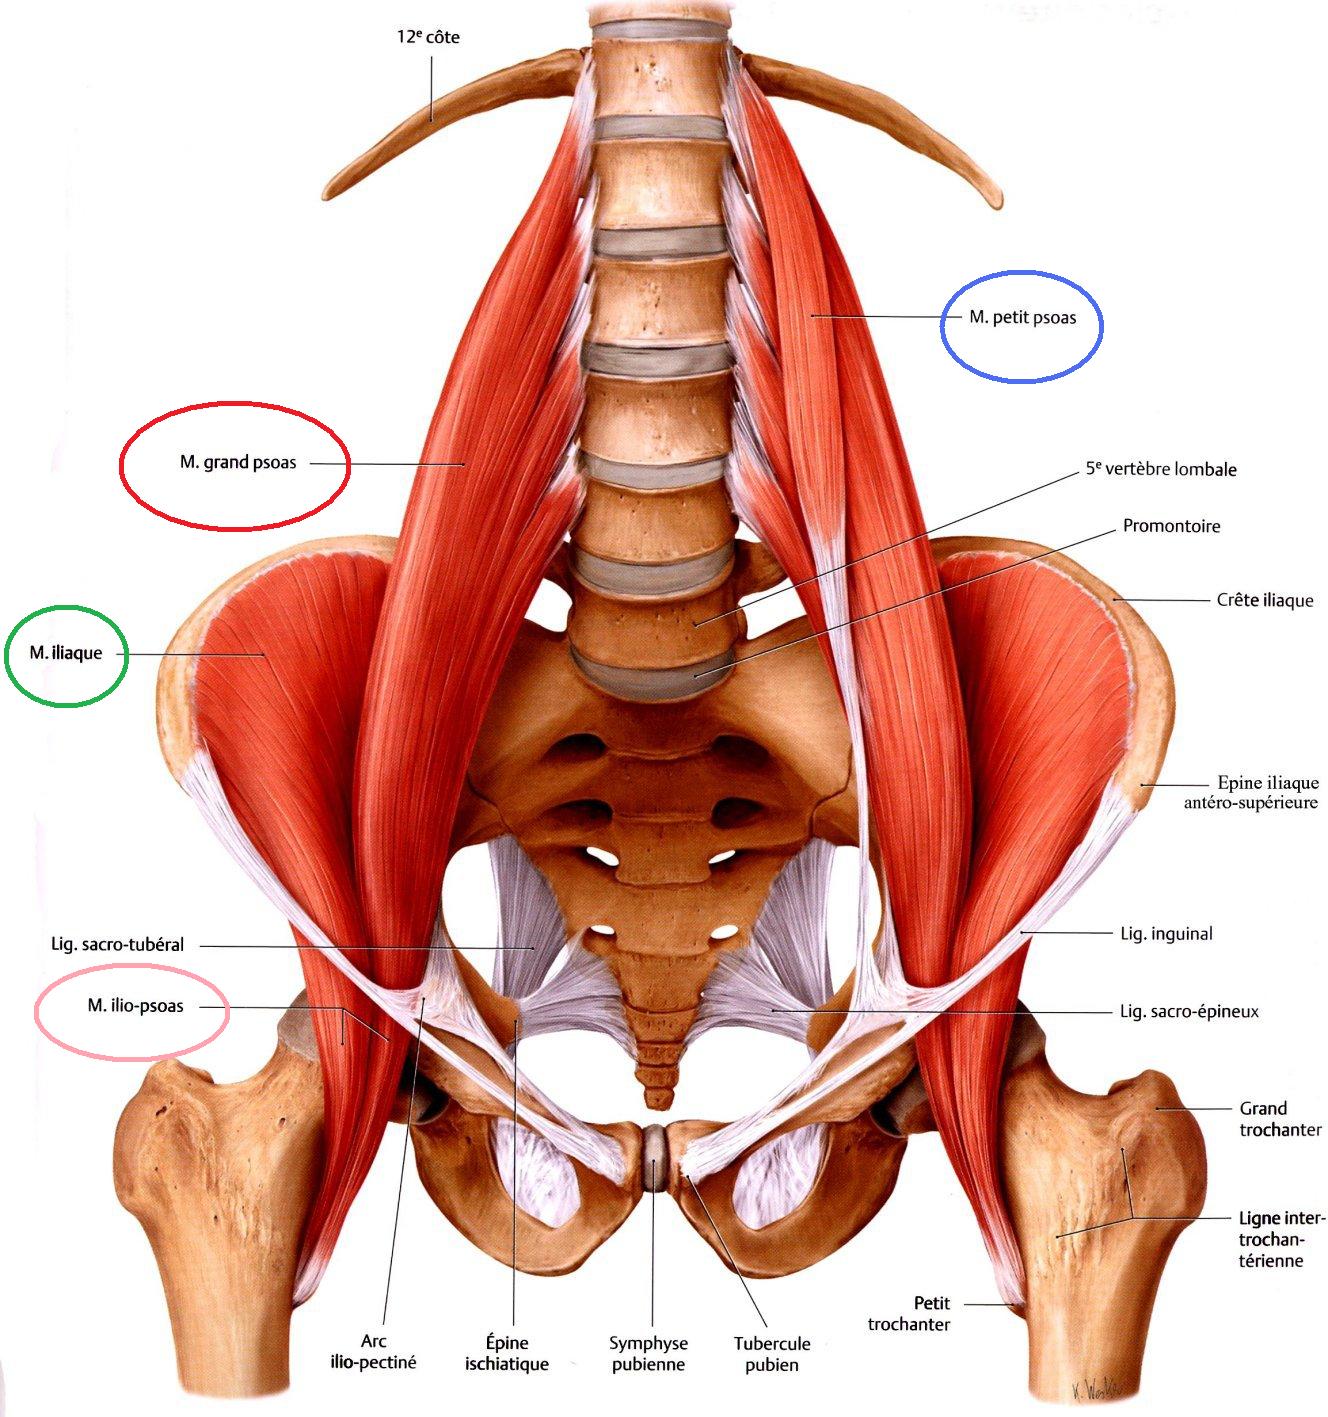 Anatomia – Muscoli dell’anca (prima parte)